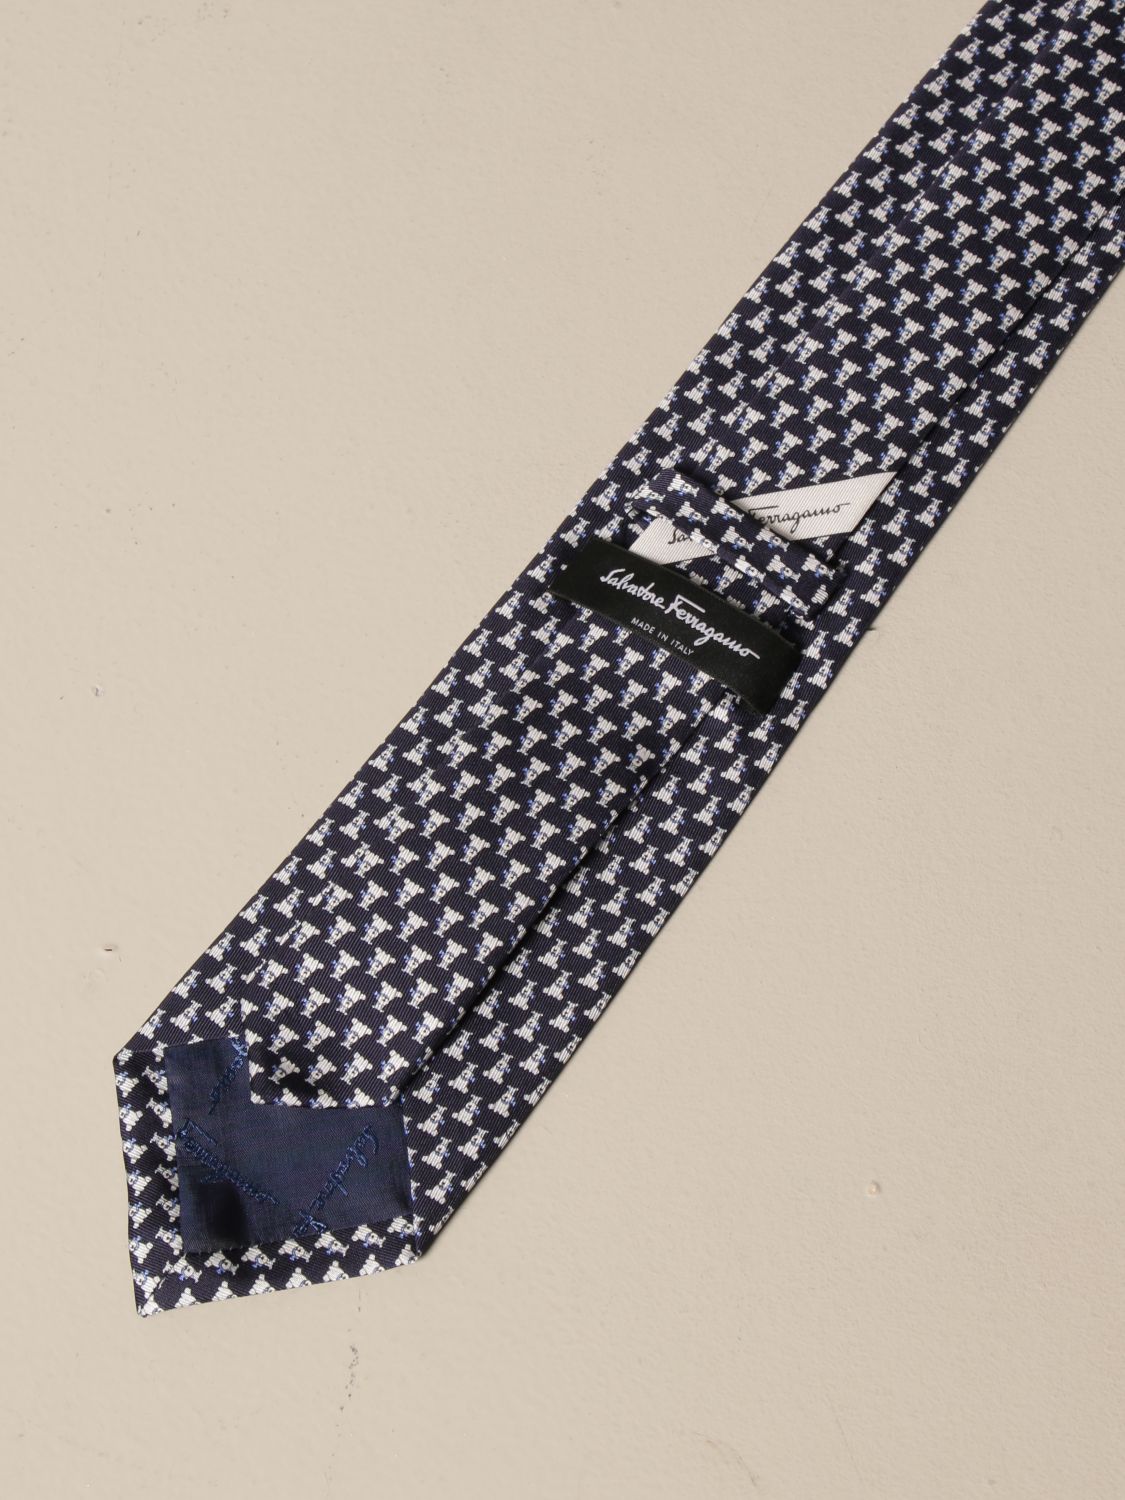 SALVATORE FERRAGAMO: silk tie with dog pattern | Tie Salvatore ...